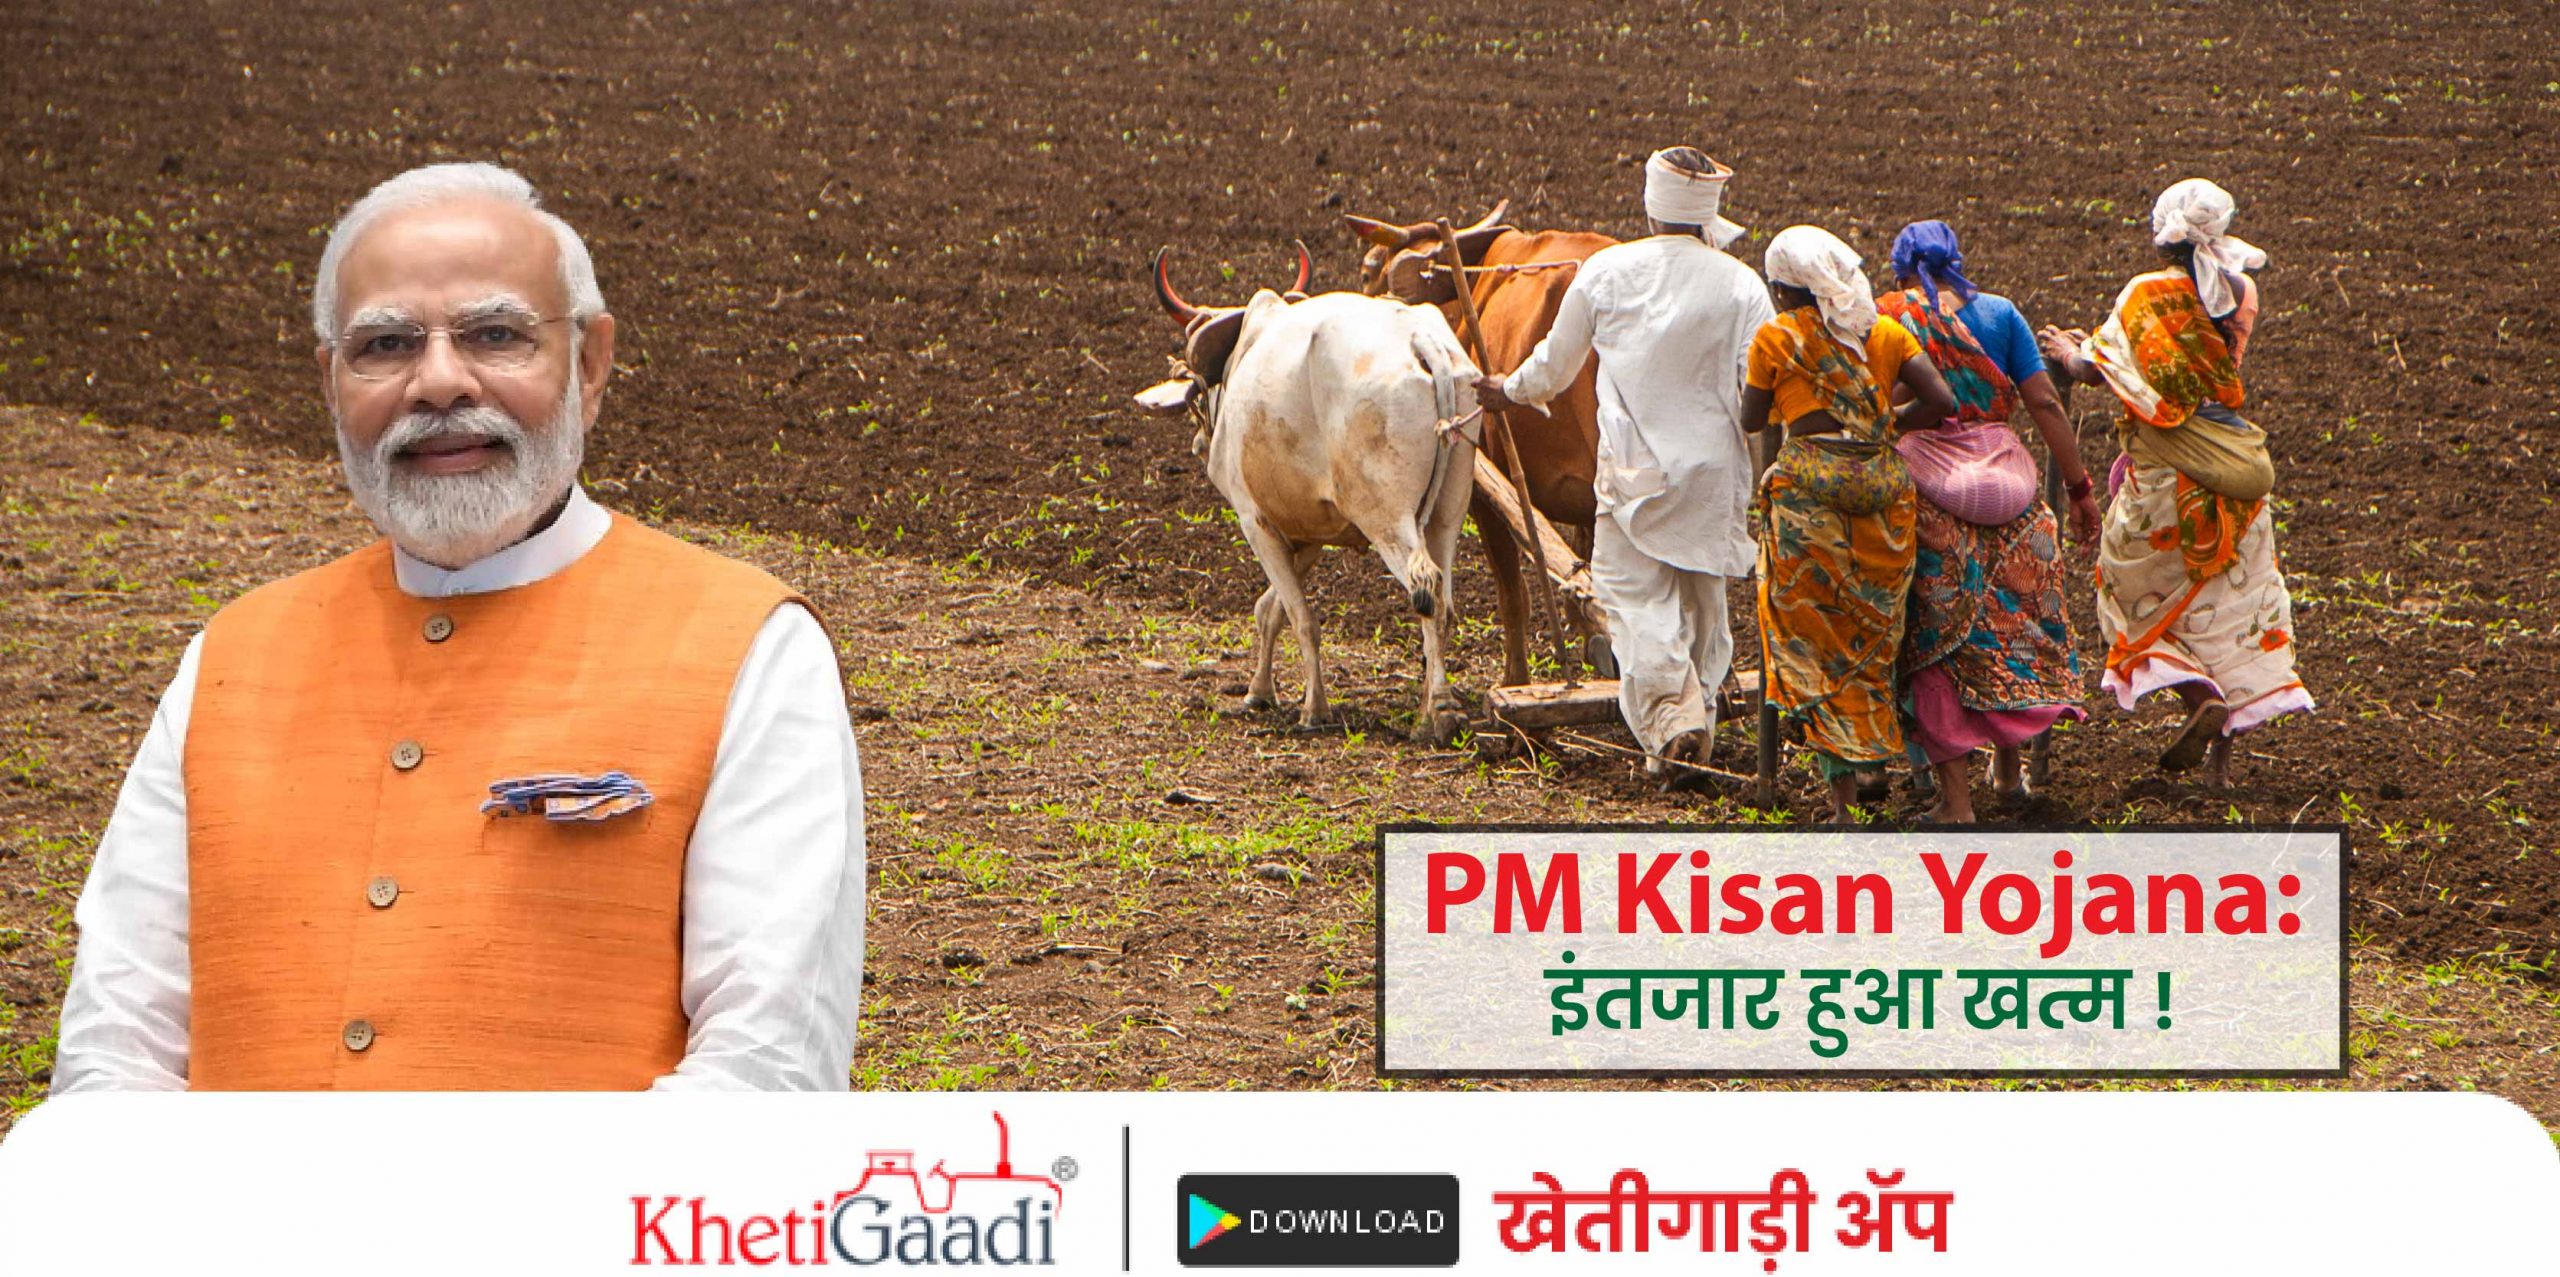 PM Kisan Yojana: इंतजार हुआ खत्म ! प्रधानमंत्री मोदी आज घोषित करेंगे किसान सम्मान निधि की 16वीं किस्त।